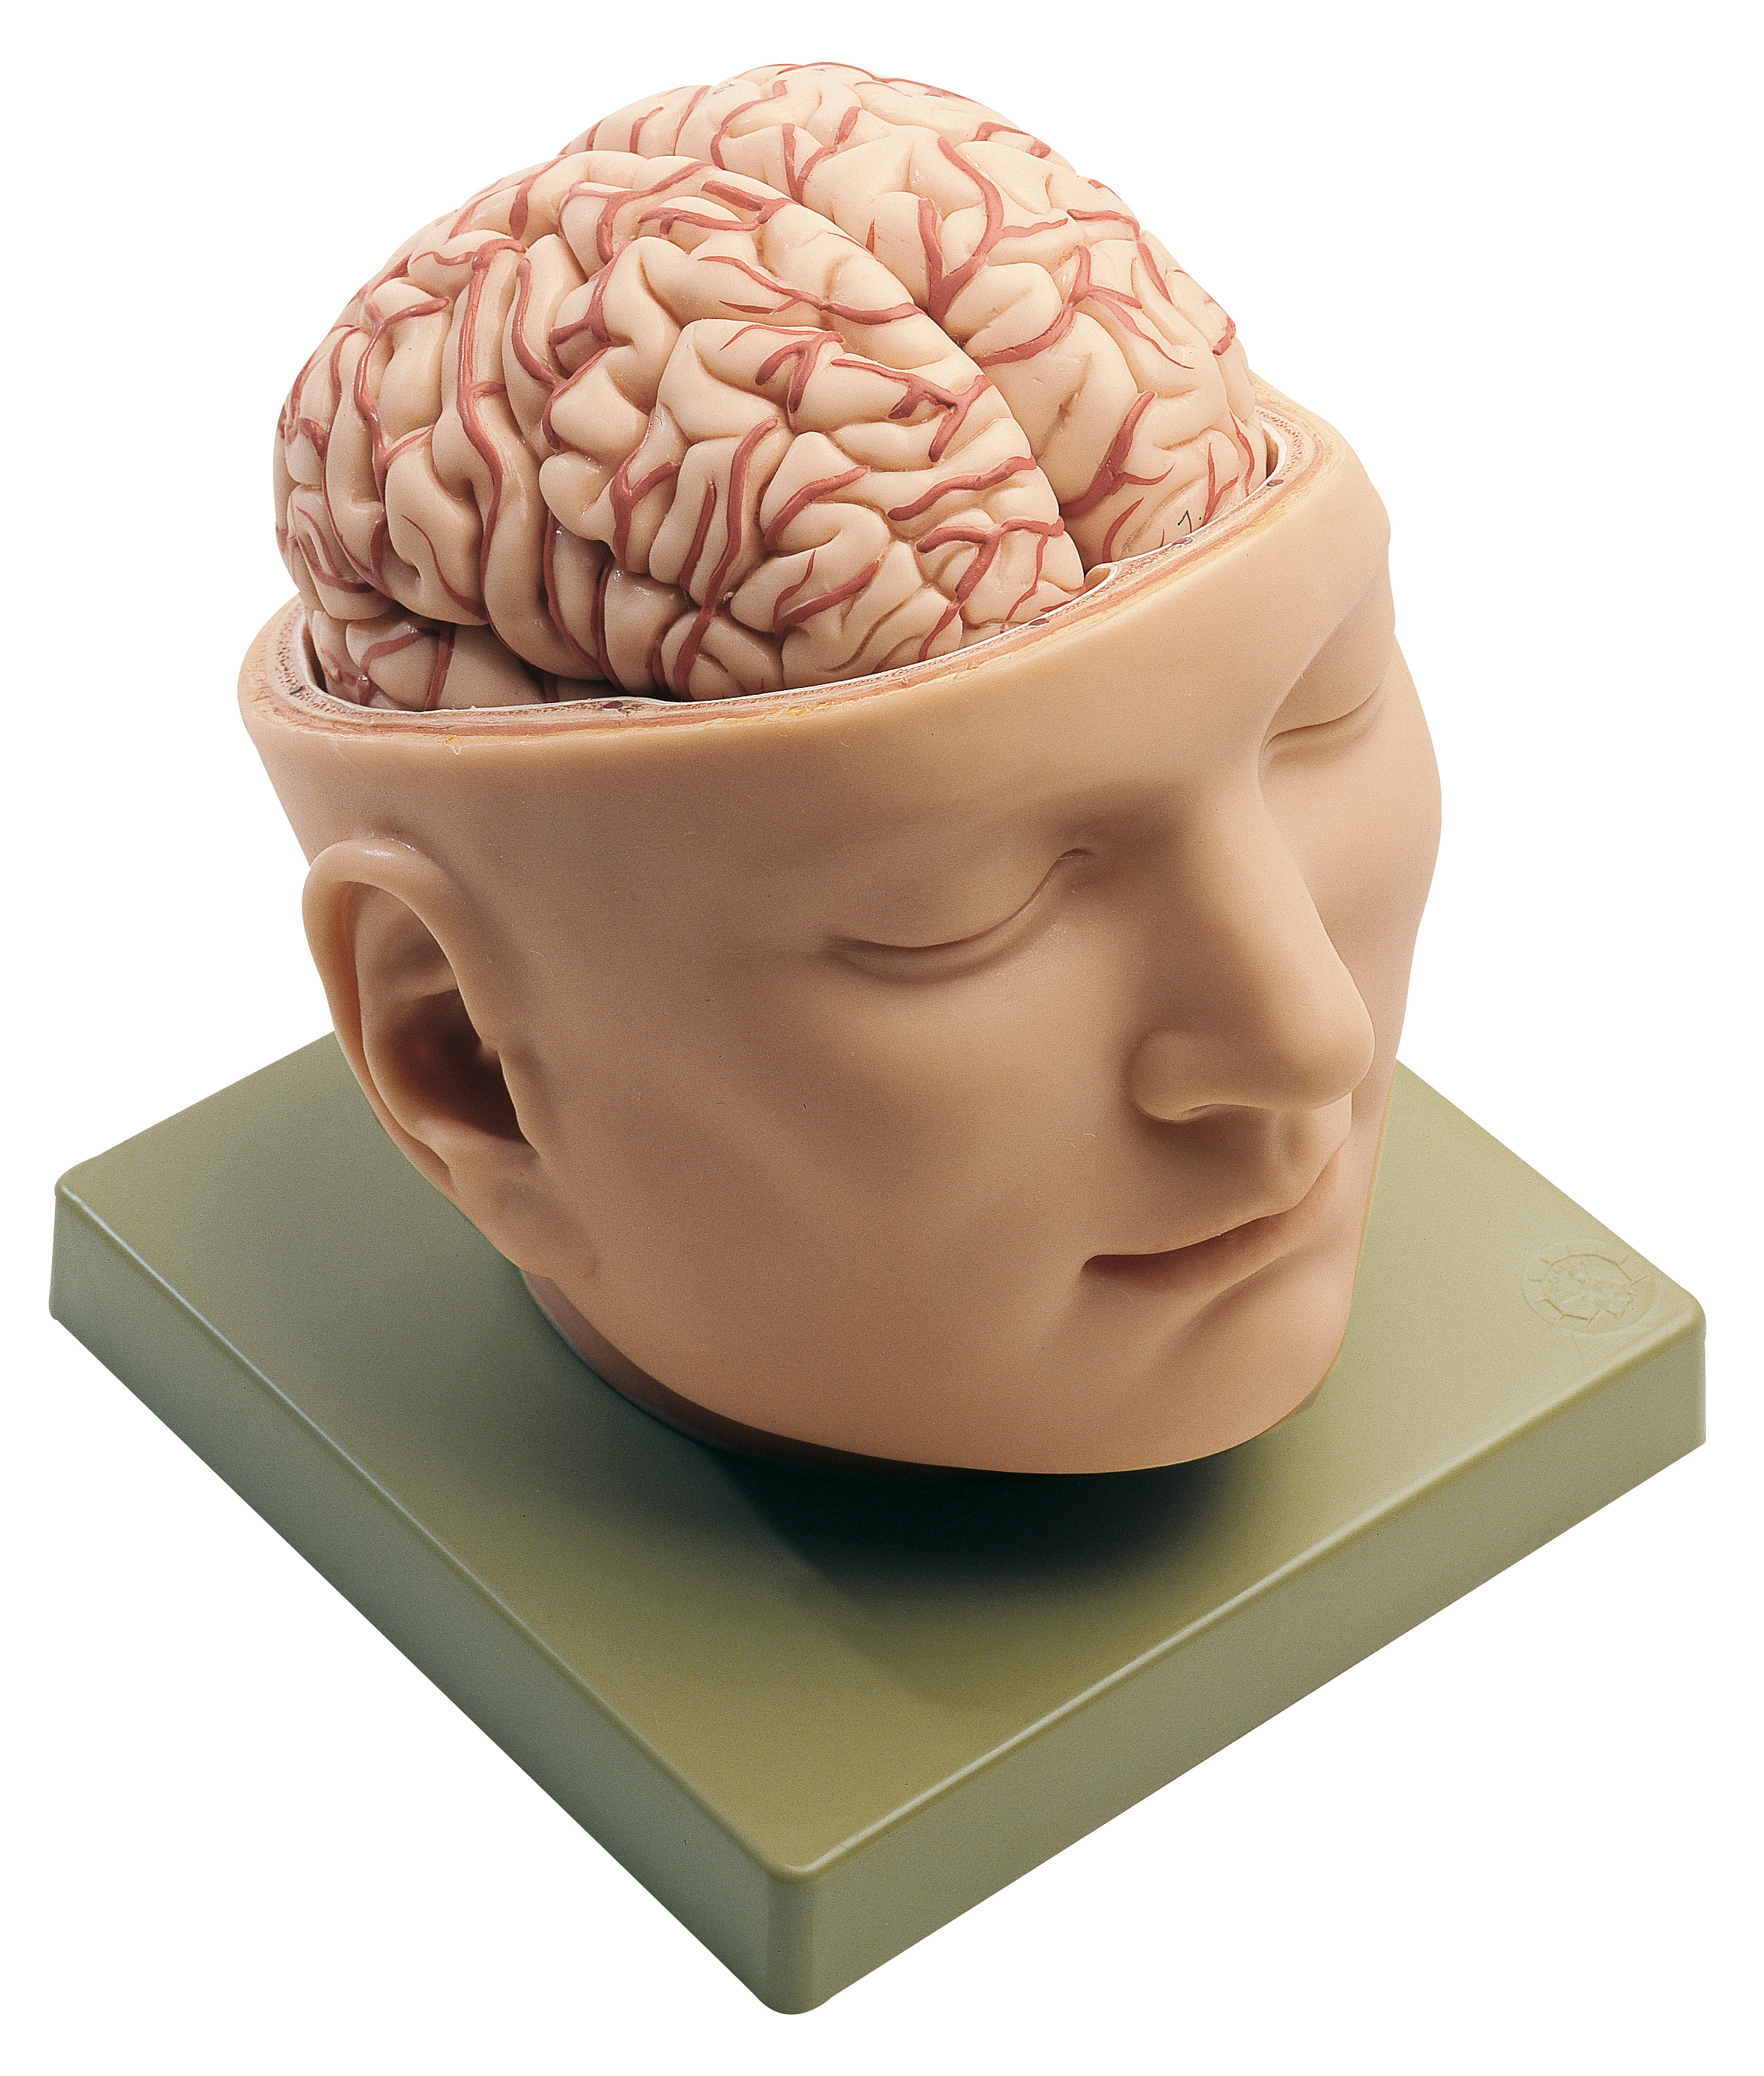 Мозг затылок. Мозг в голове. Человеческая голова.